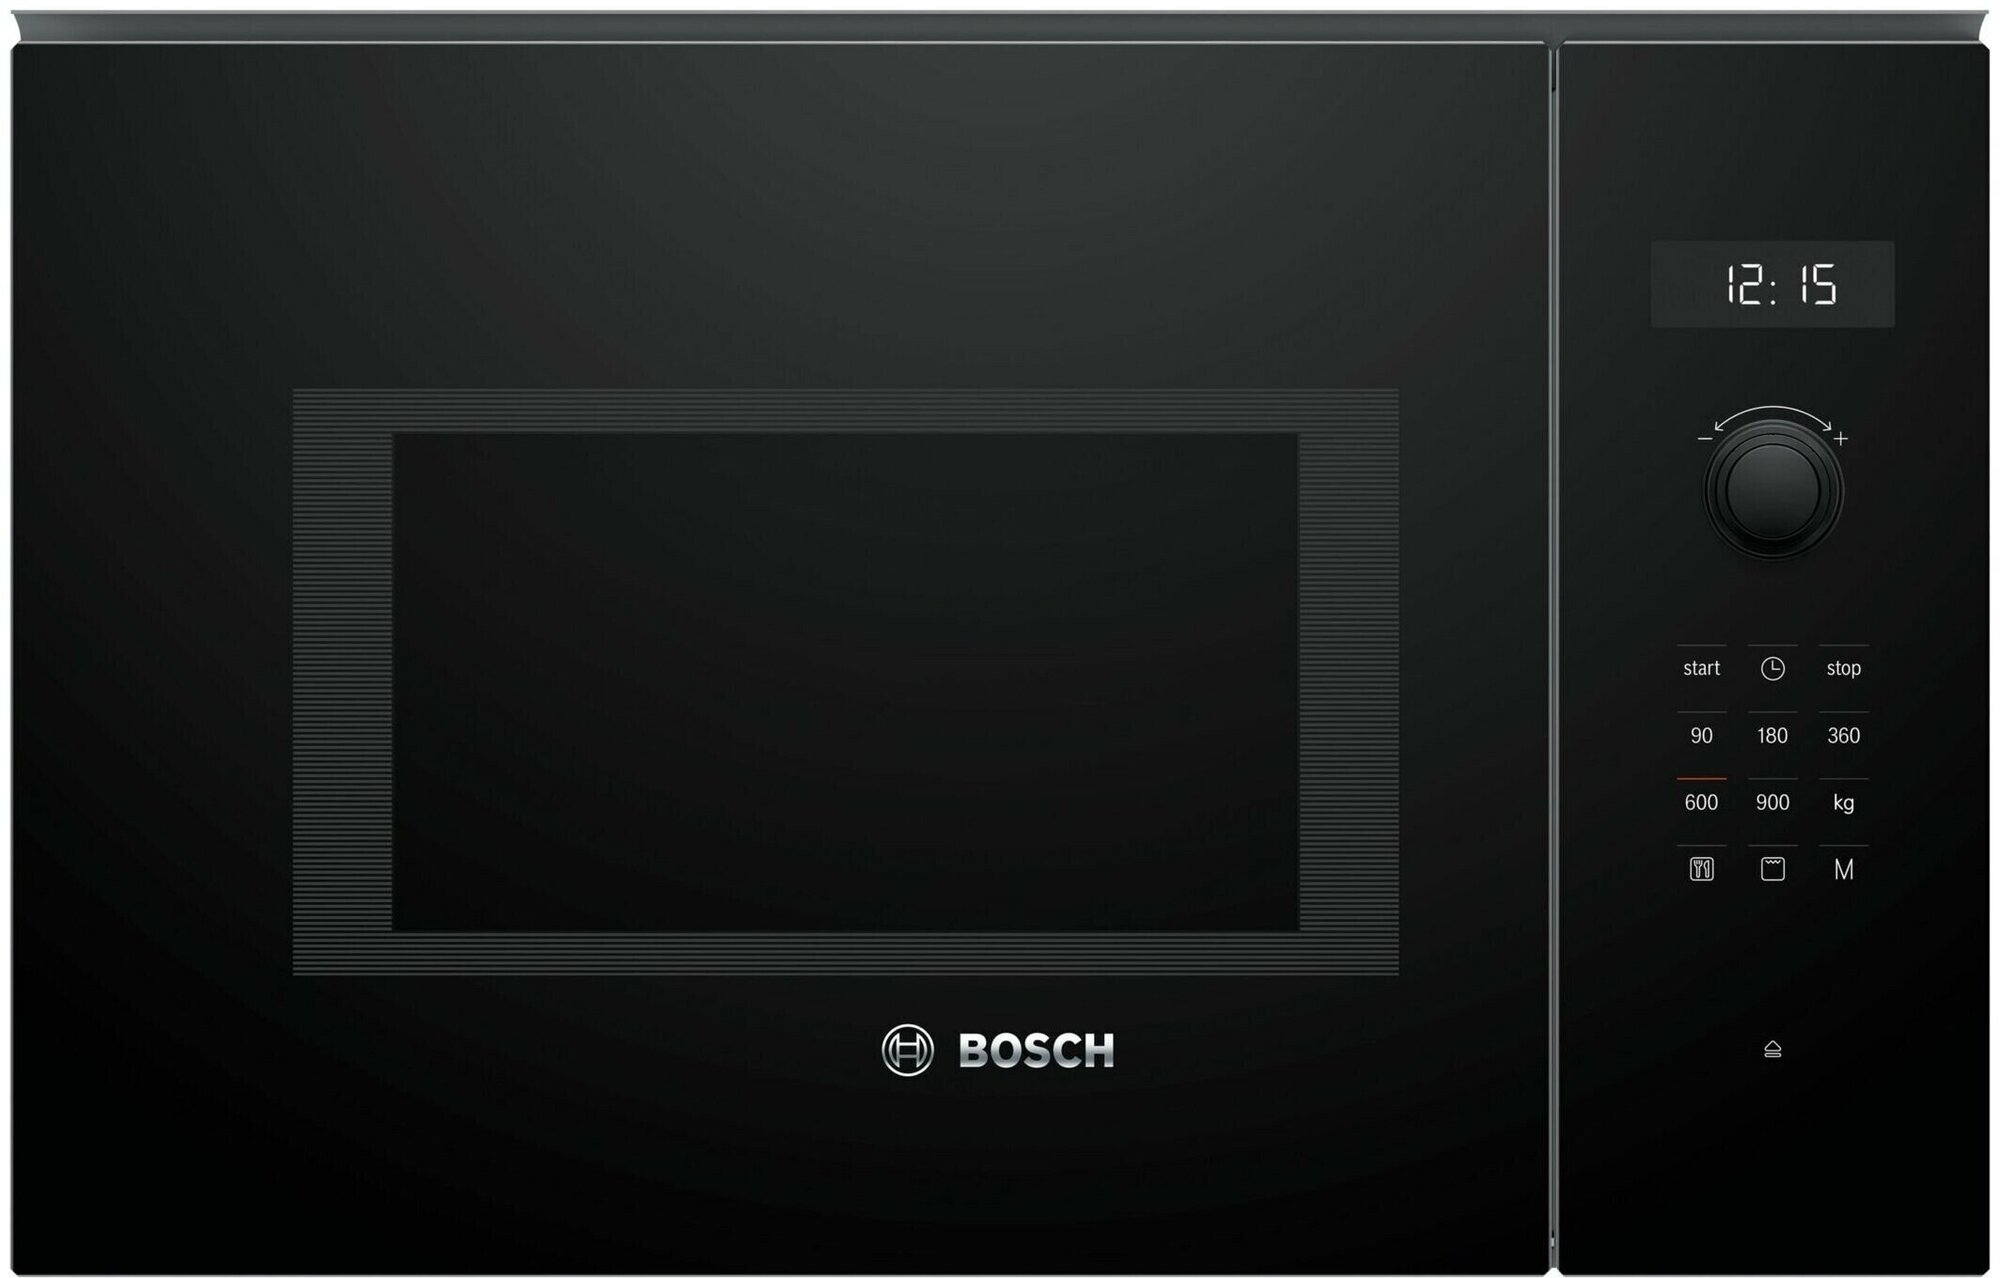 Встраиваемая микроволновая печь Bosch BEL554MB0